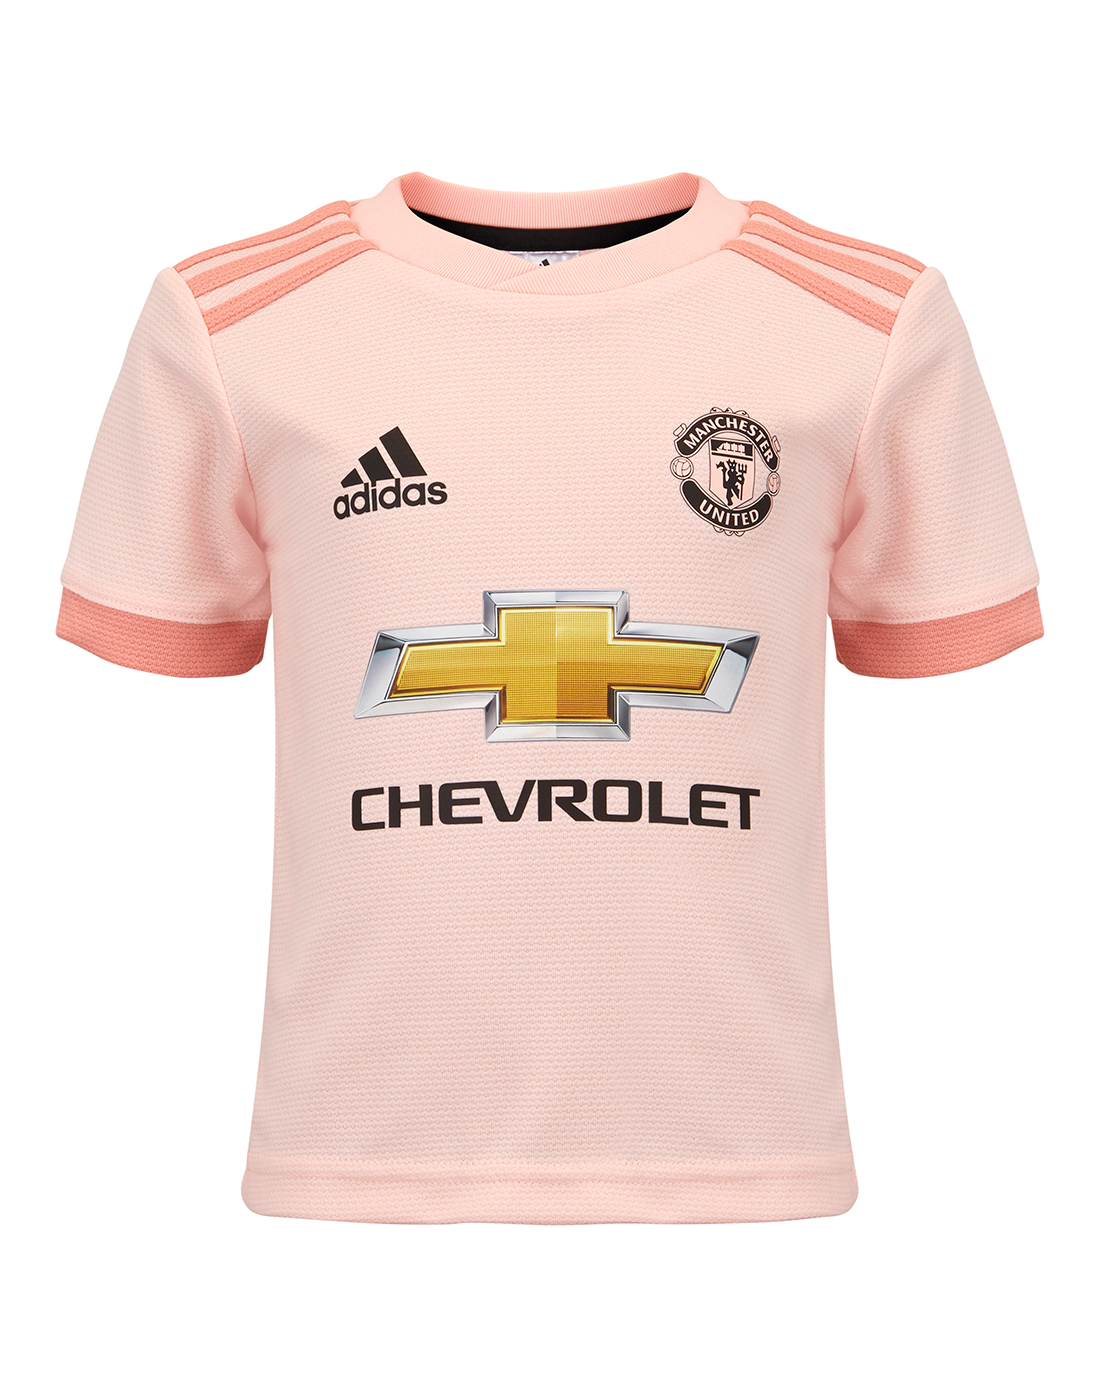 pink man united kit